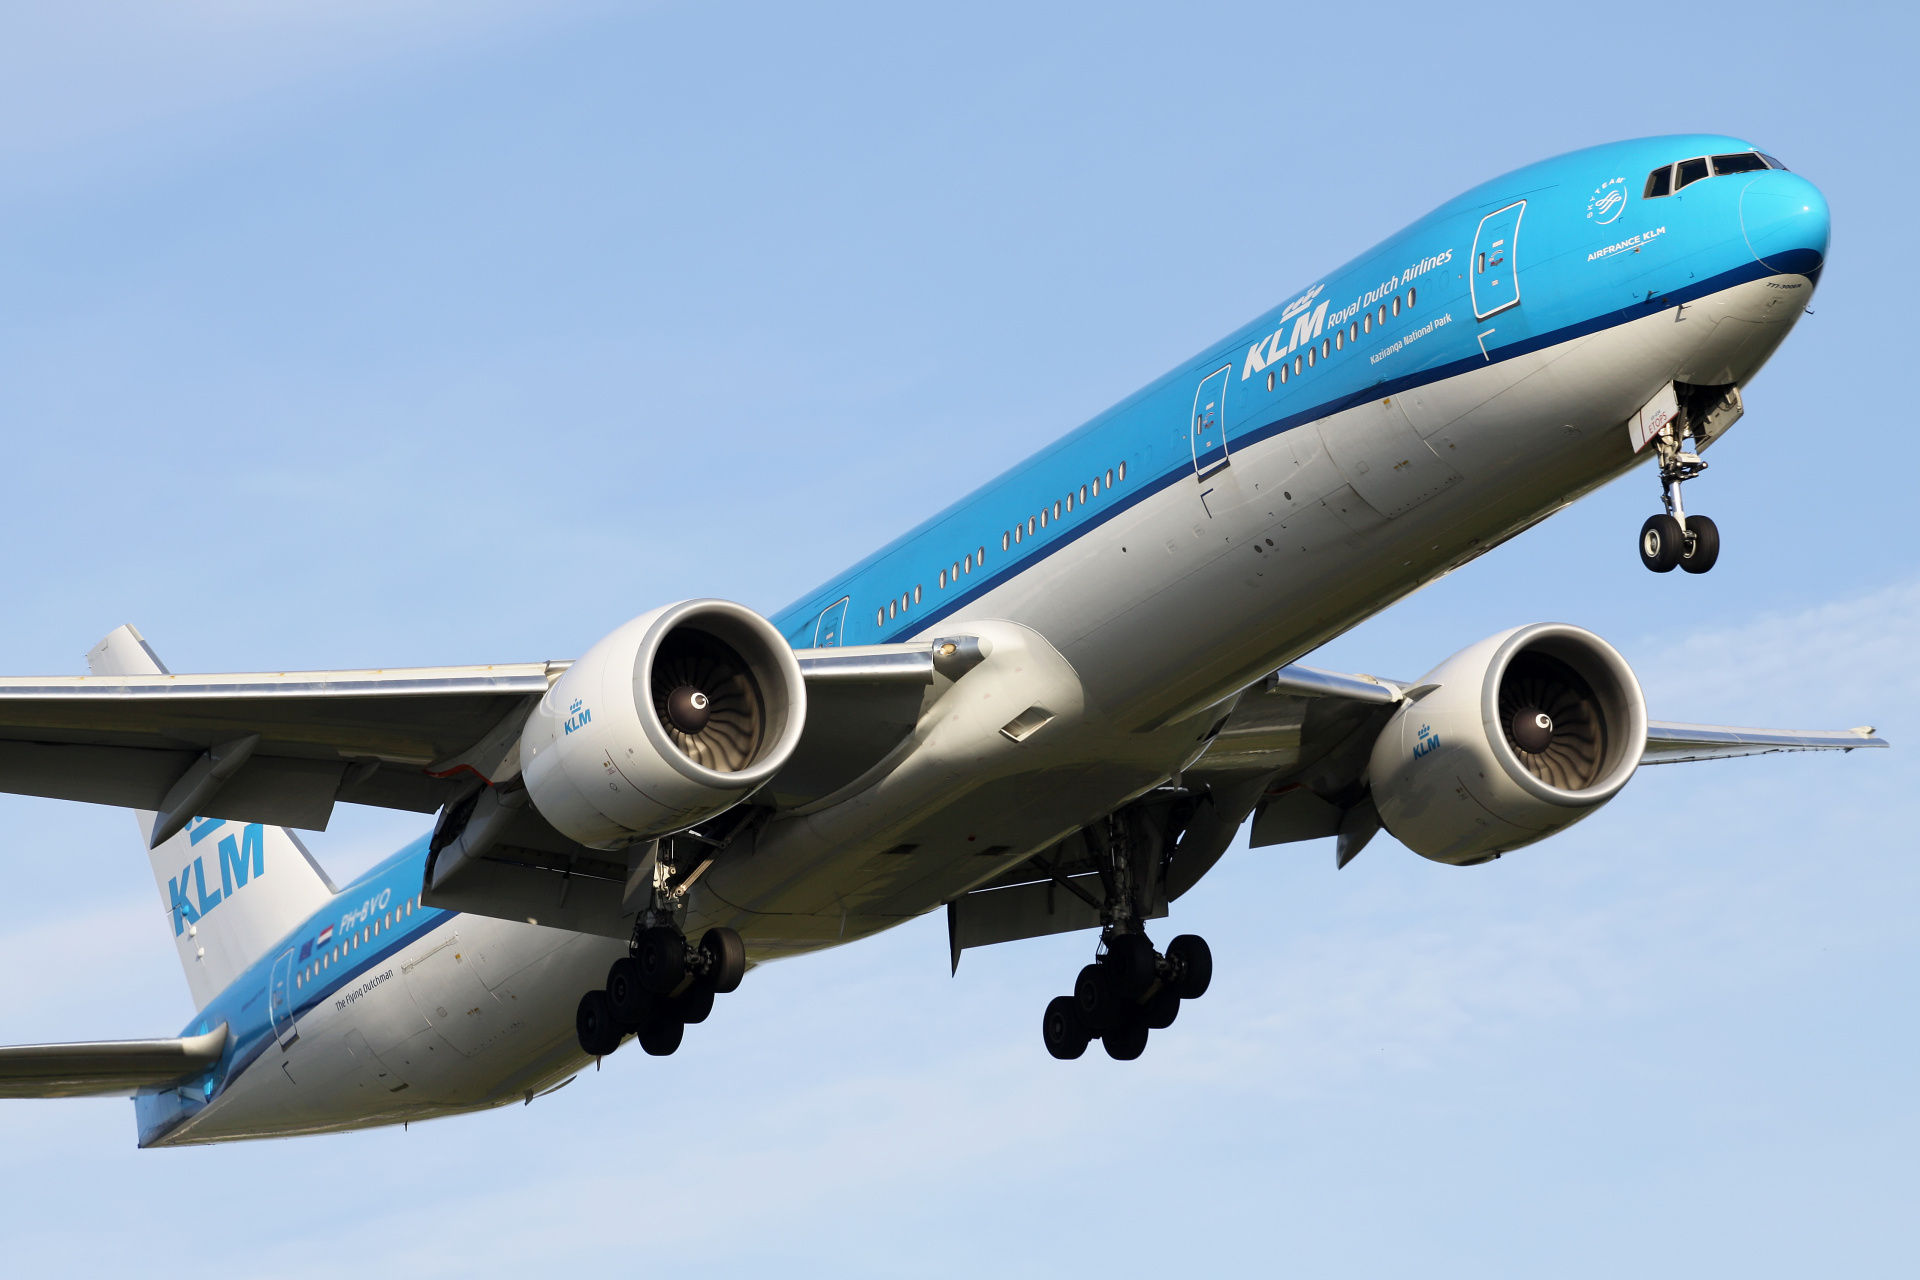 PH-BVO (Samoloty » Spotting na Schiphol » Boeing 777-300ER » KLM Royal Dutch Airlines)